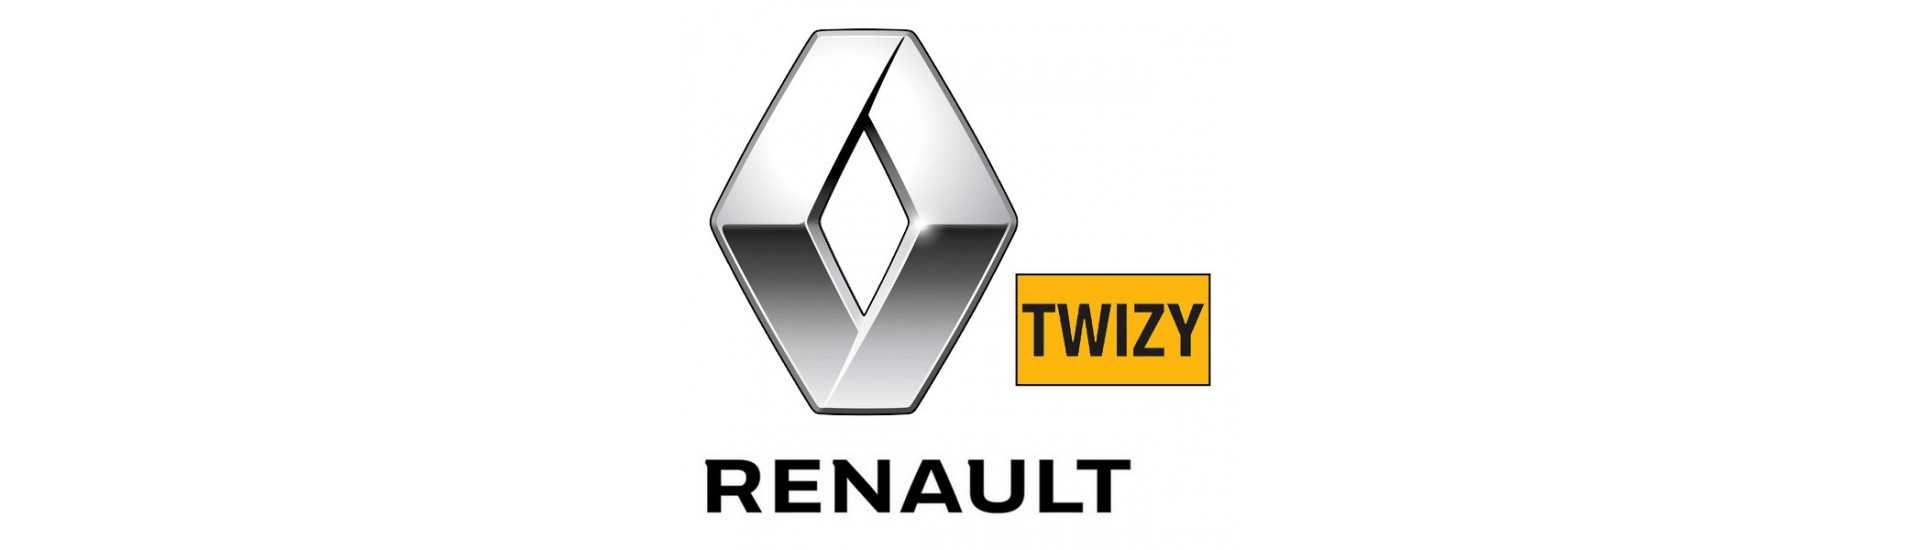 rottura pare sigillo al miglior prezzo auto senza permesso Renault Twizy